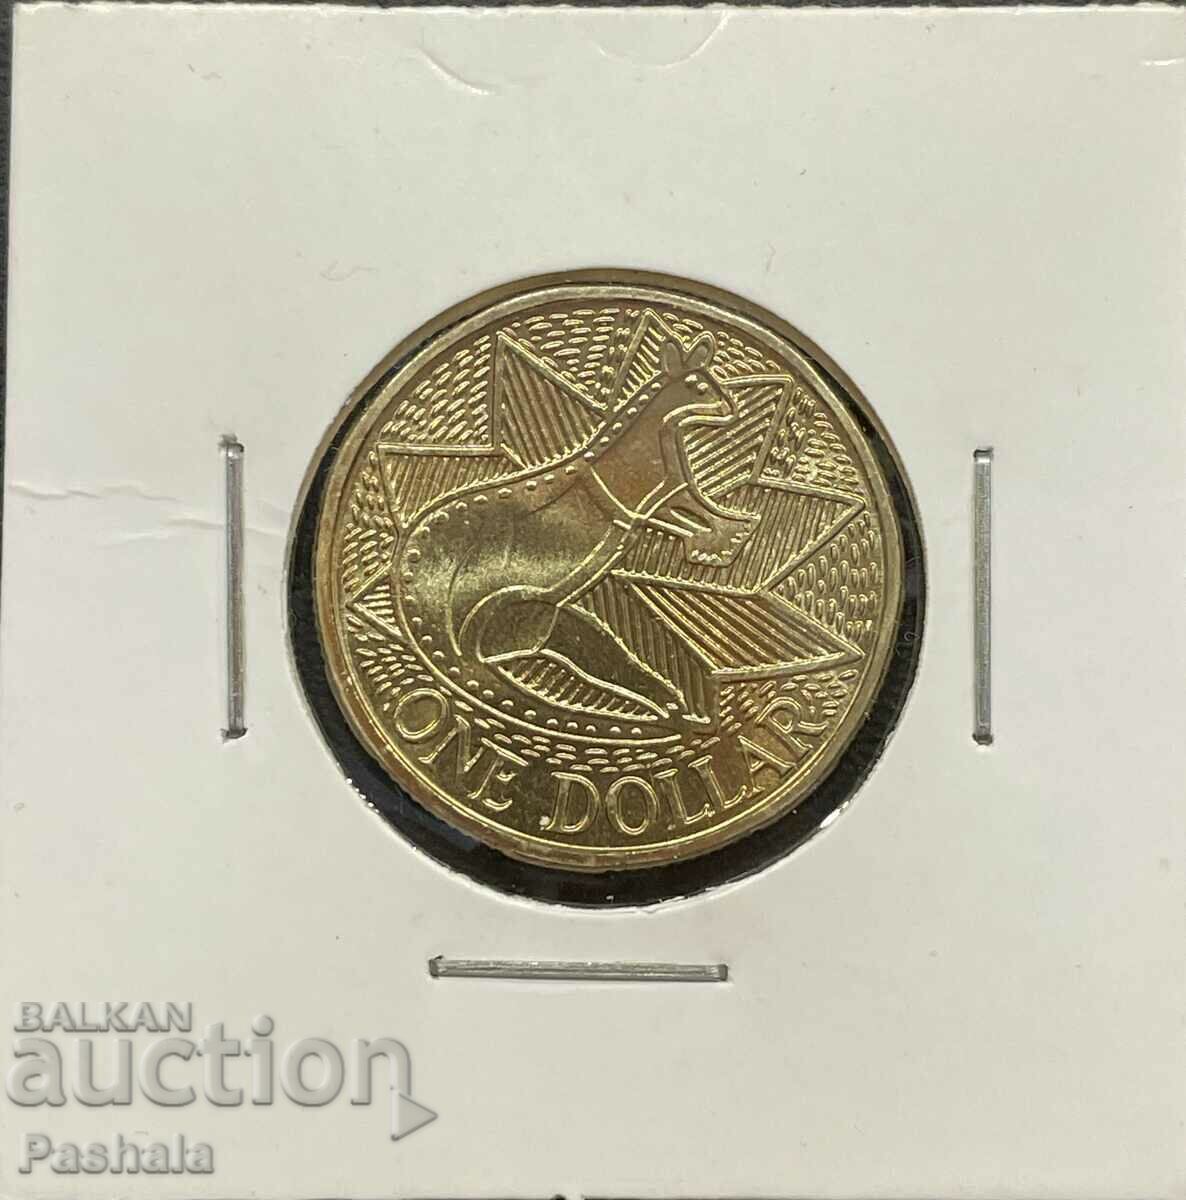 Australia $1 1988